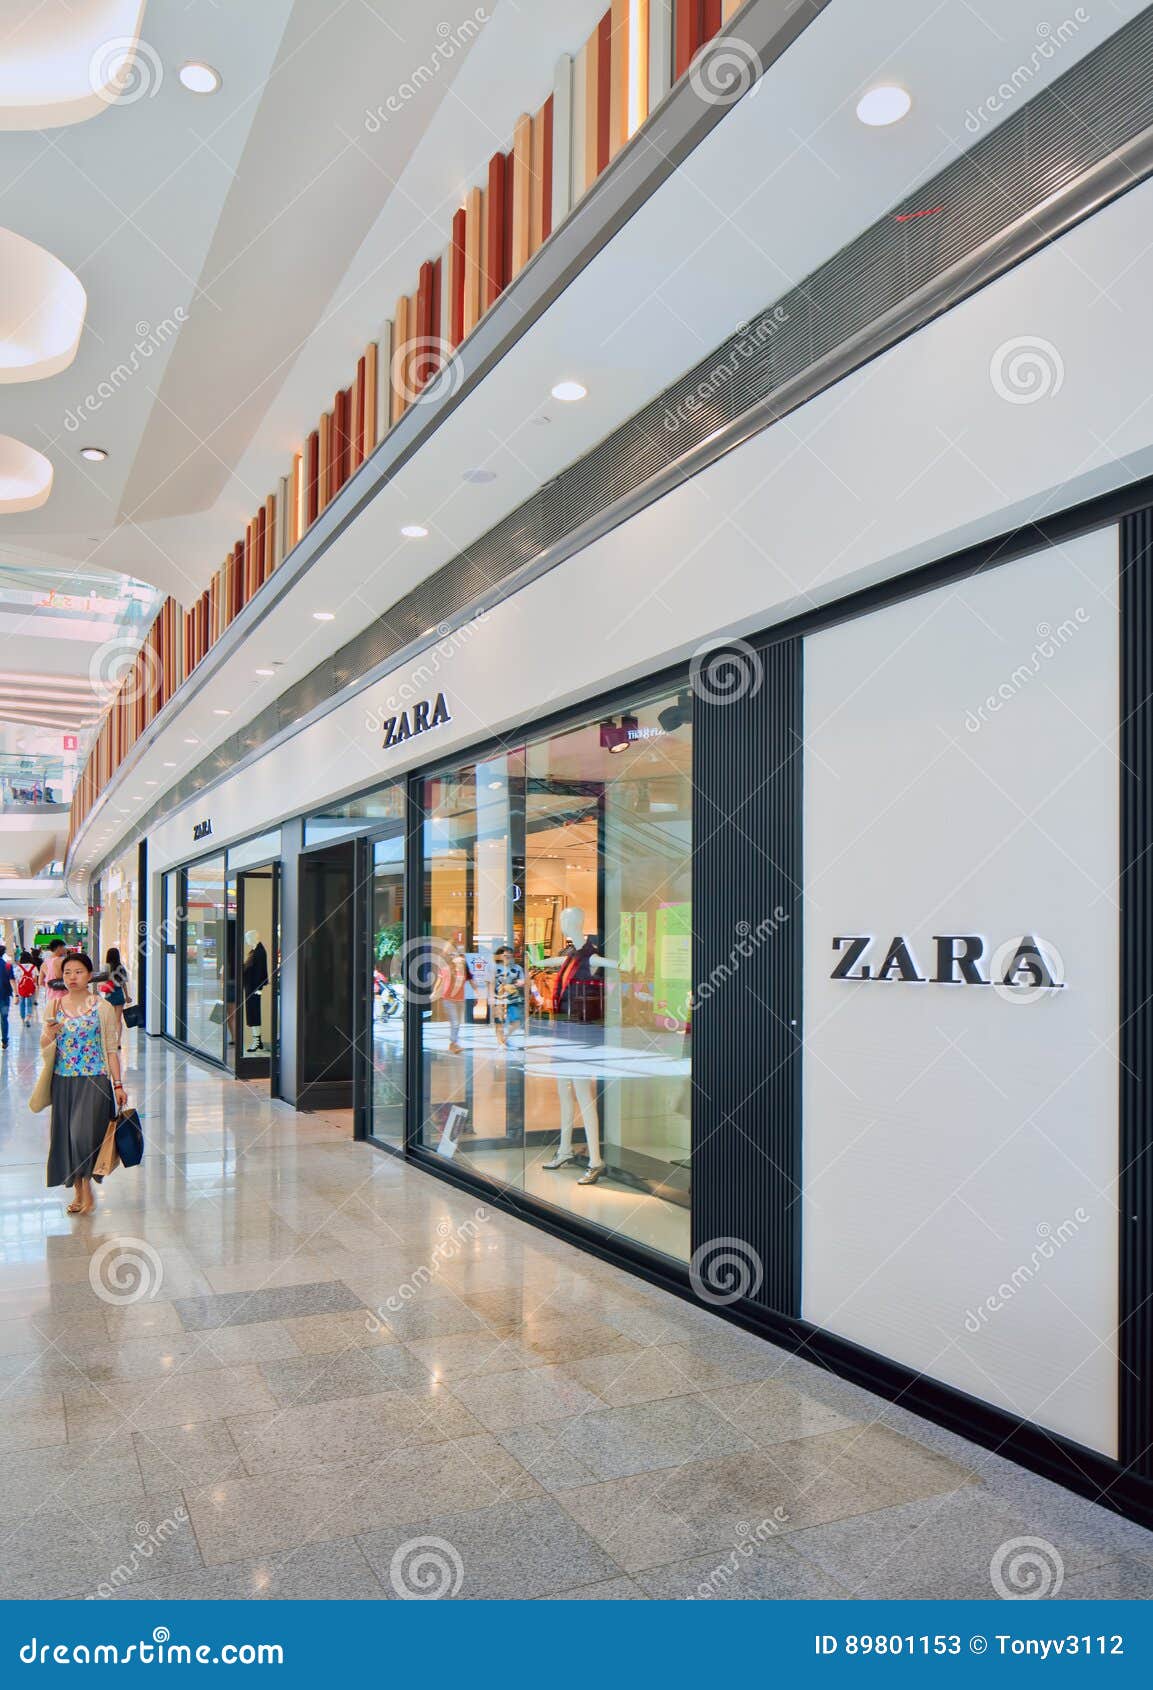 zara fort shopping centre